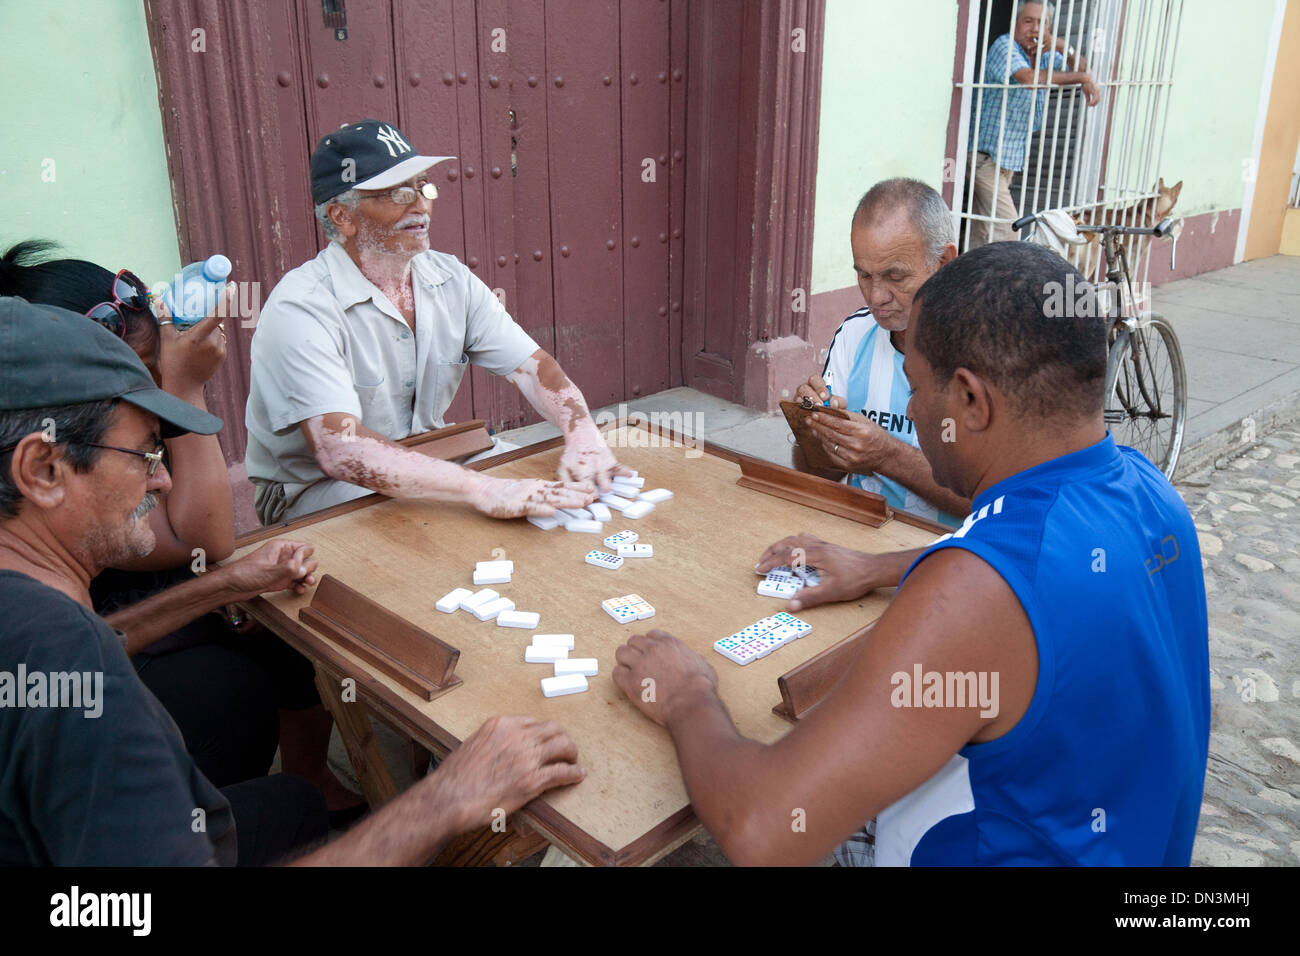 Männer spielen Domino auf der Straße - Beispiel der kubanischen Kultur, Trinidad, Kuba, Karibik, Lateinamerika Stockfoto